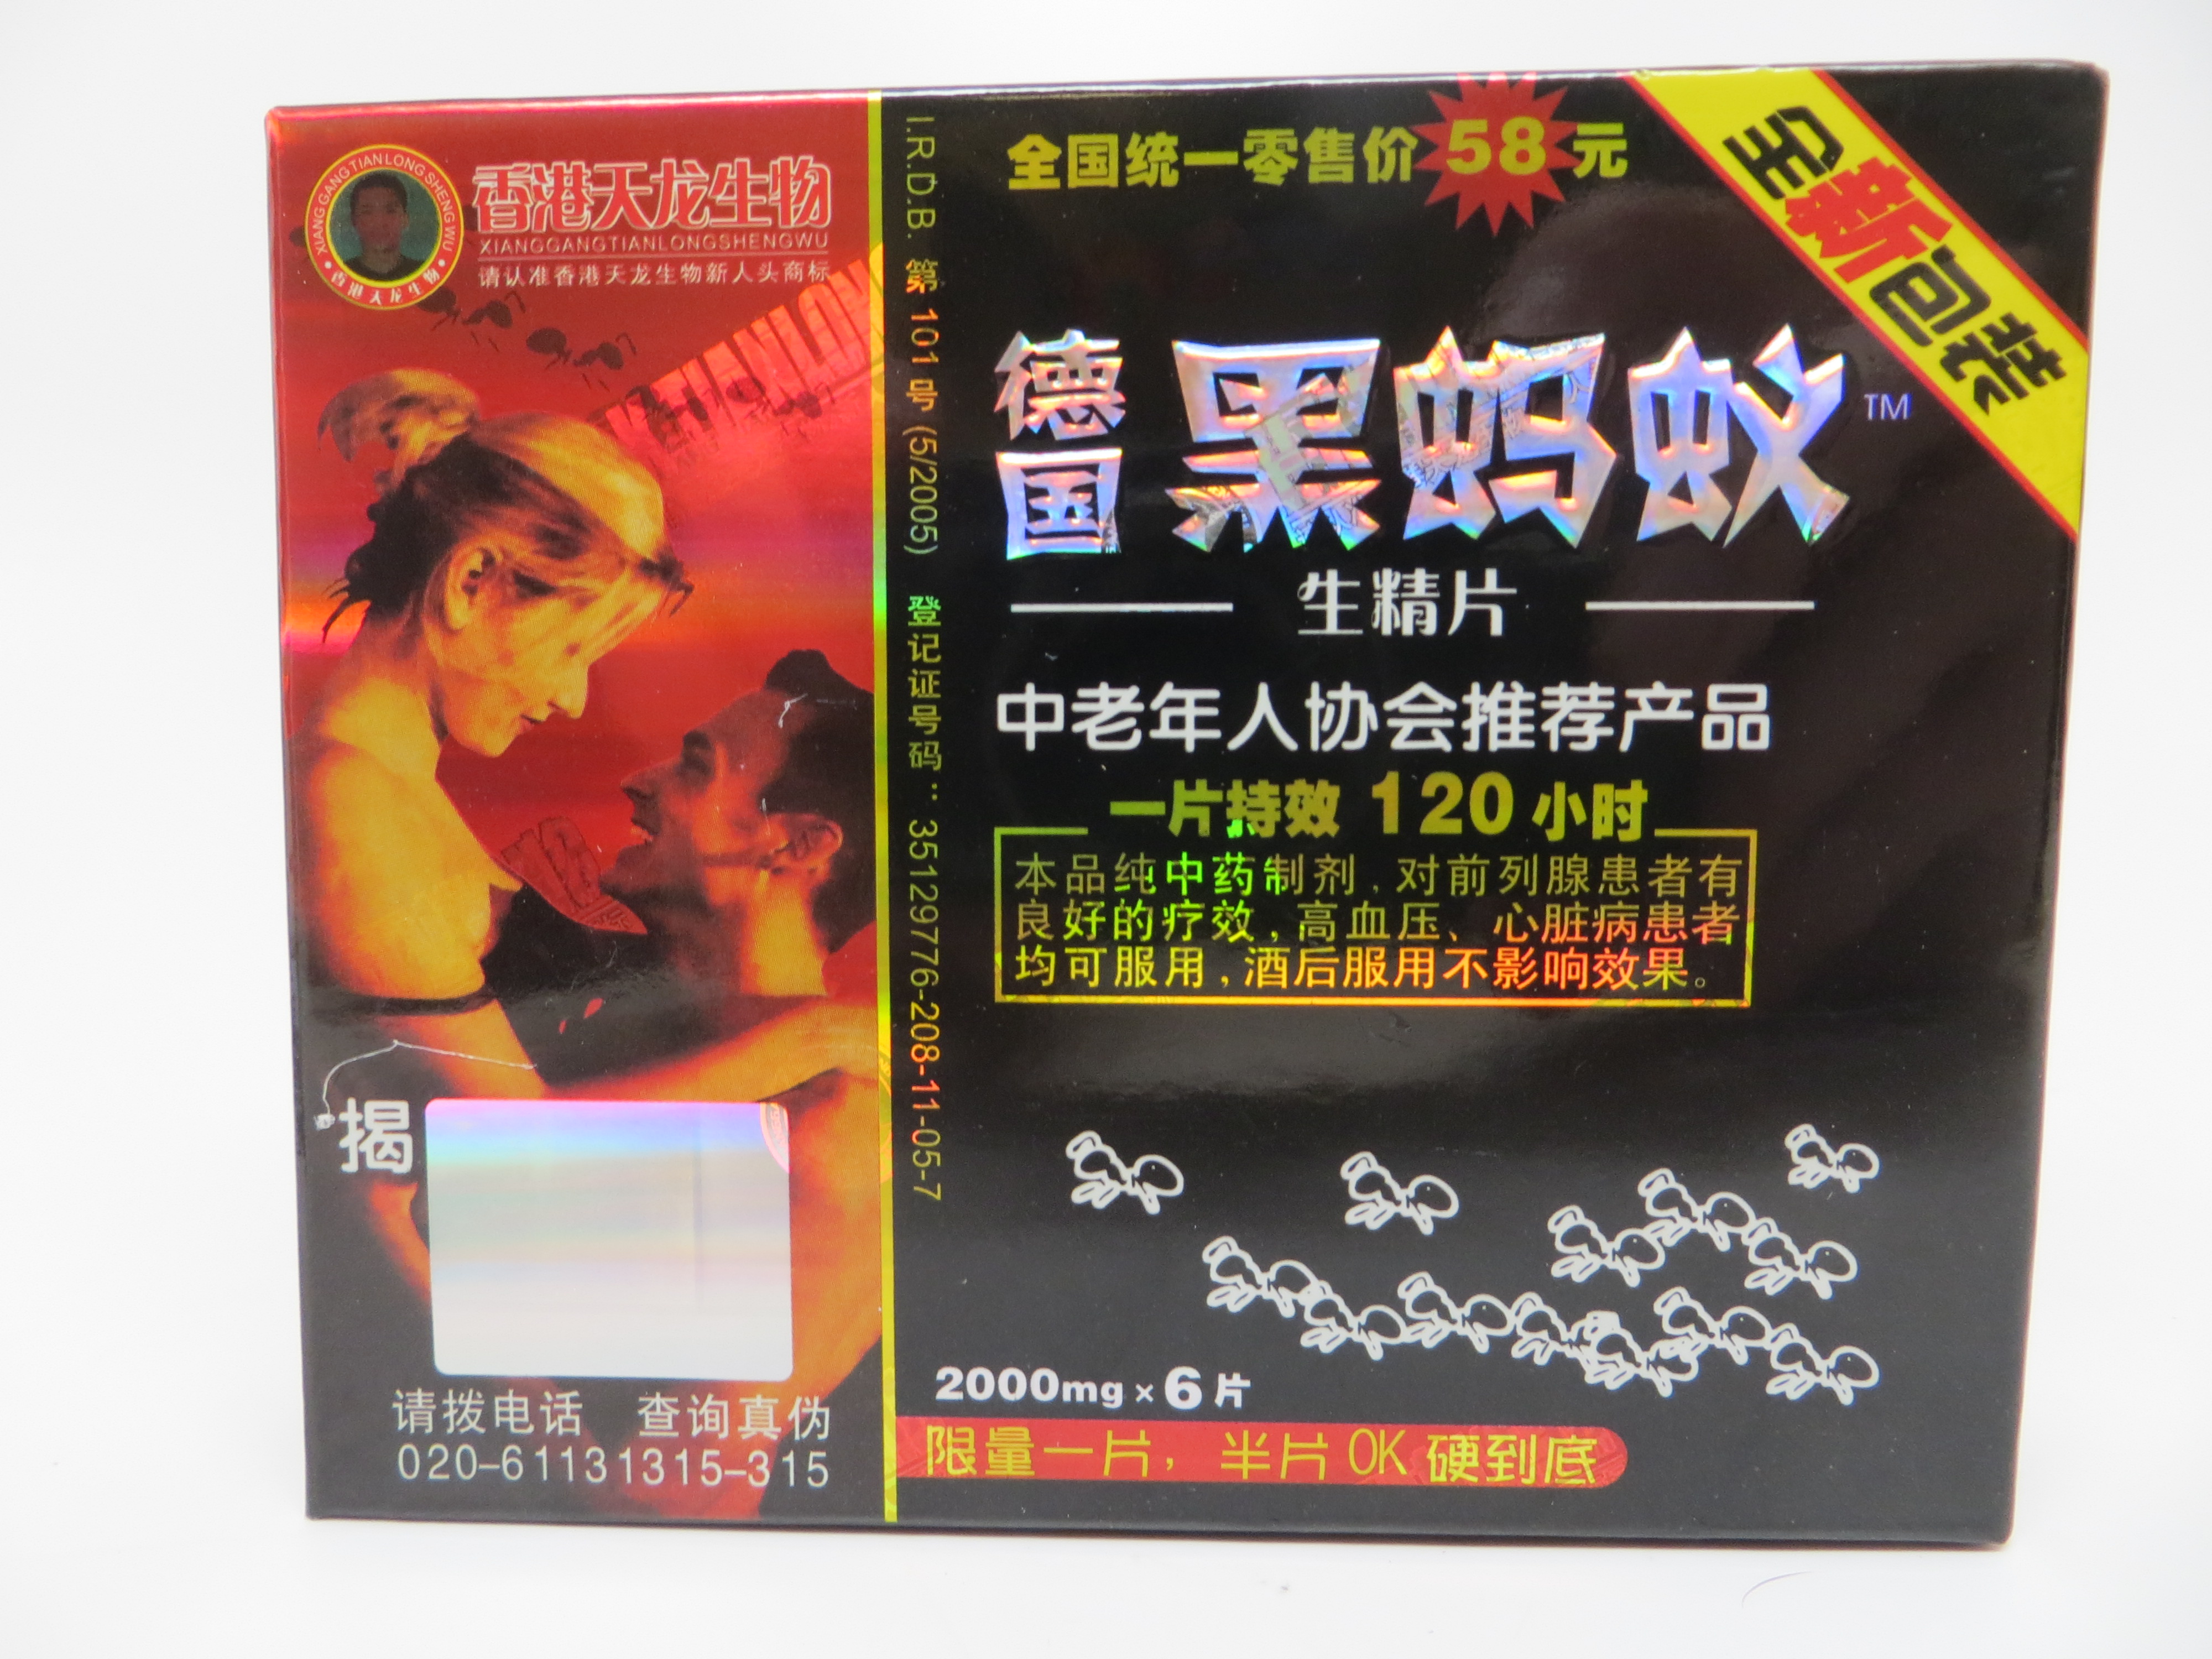 Image of the illigal product: Shenjingpian